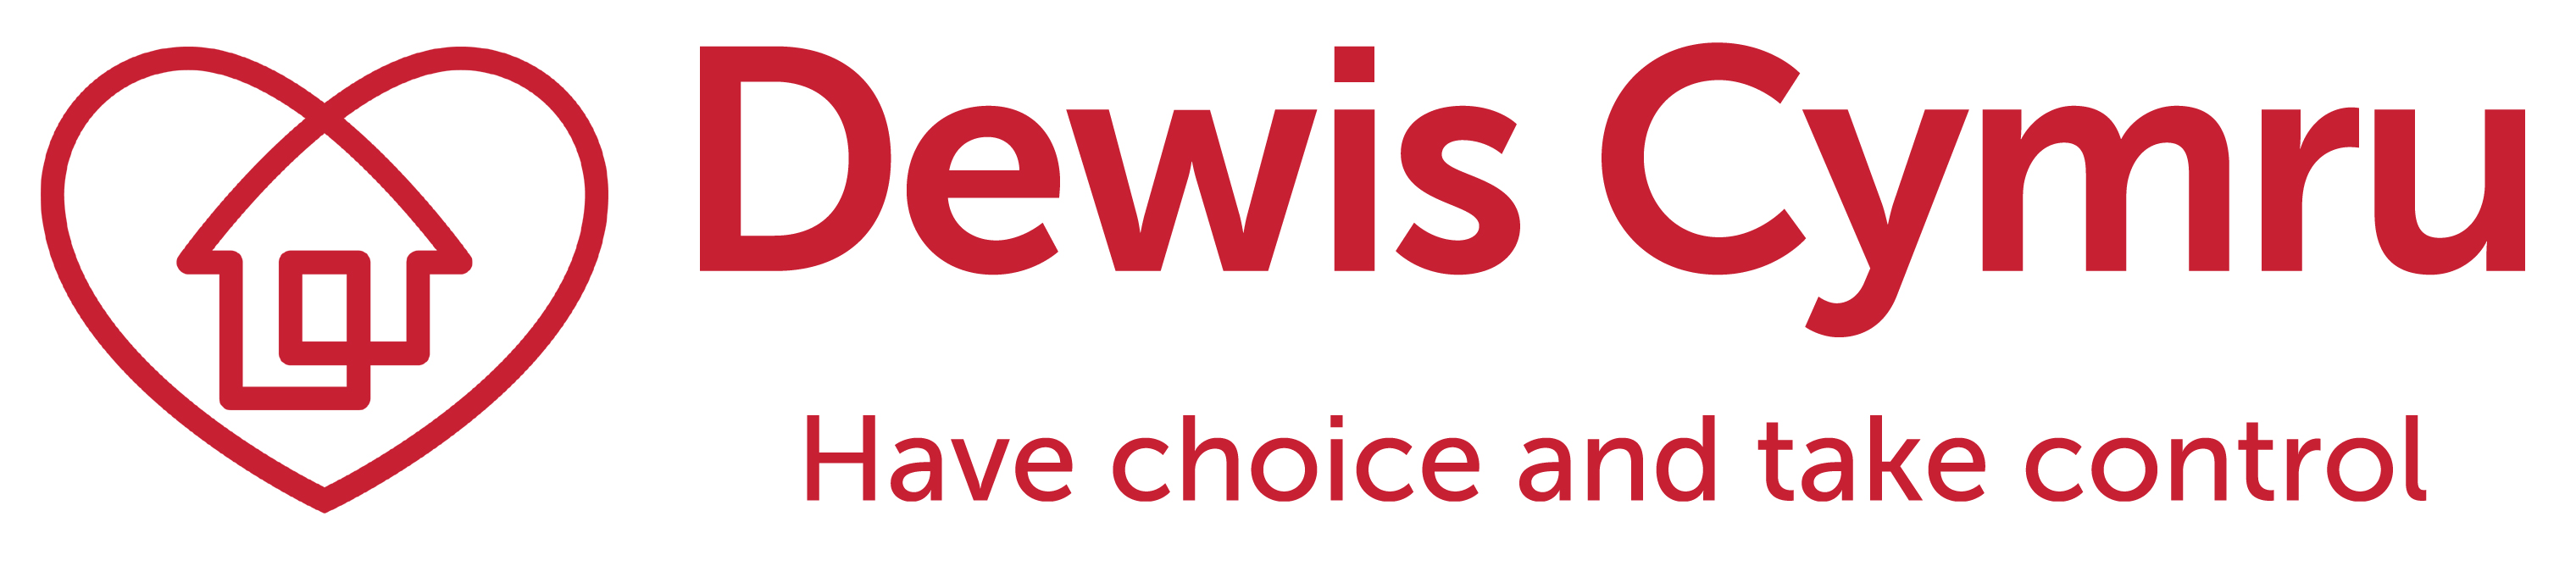 Dewis Cymru, Have choice and take control